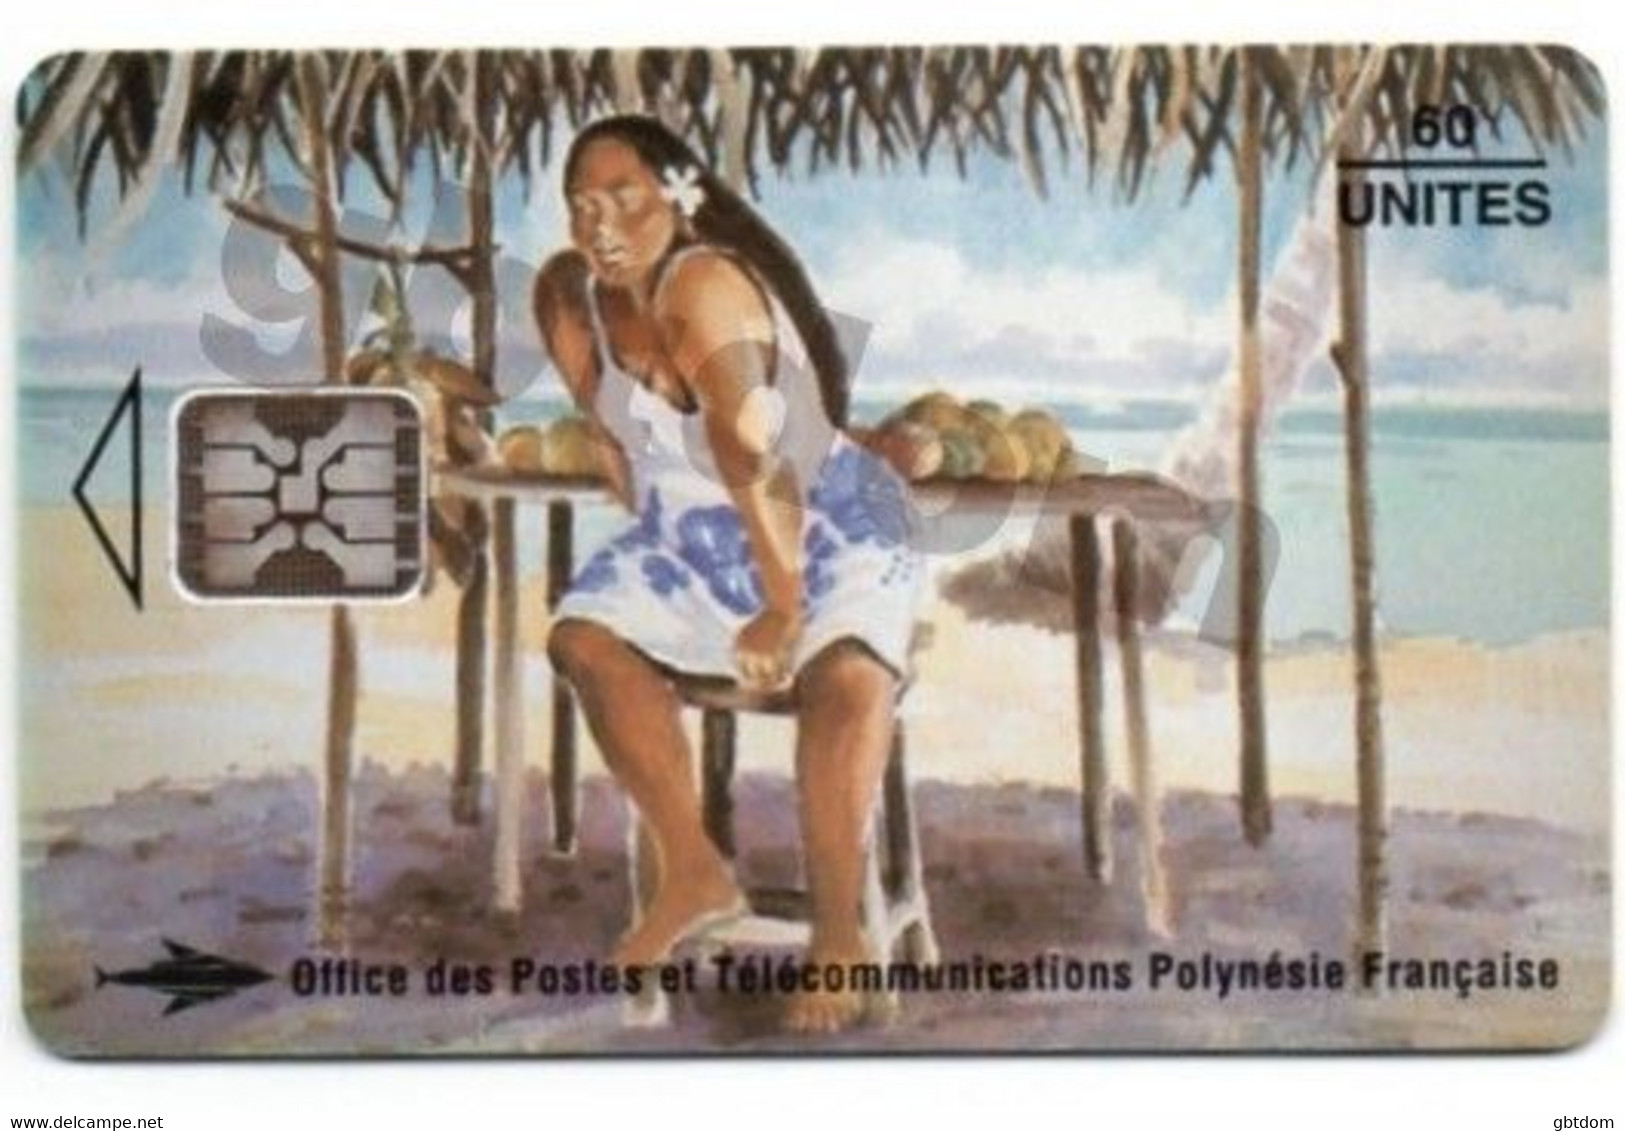 Magnifique Carte Téléphonique De TAHITI Polynésie Française - Vendeuse De Mangues - Erhard Lux - Otros – Oceanía